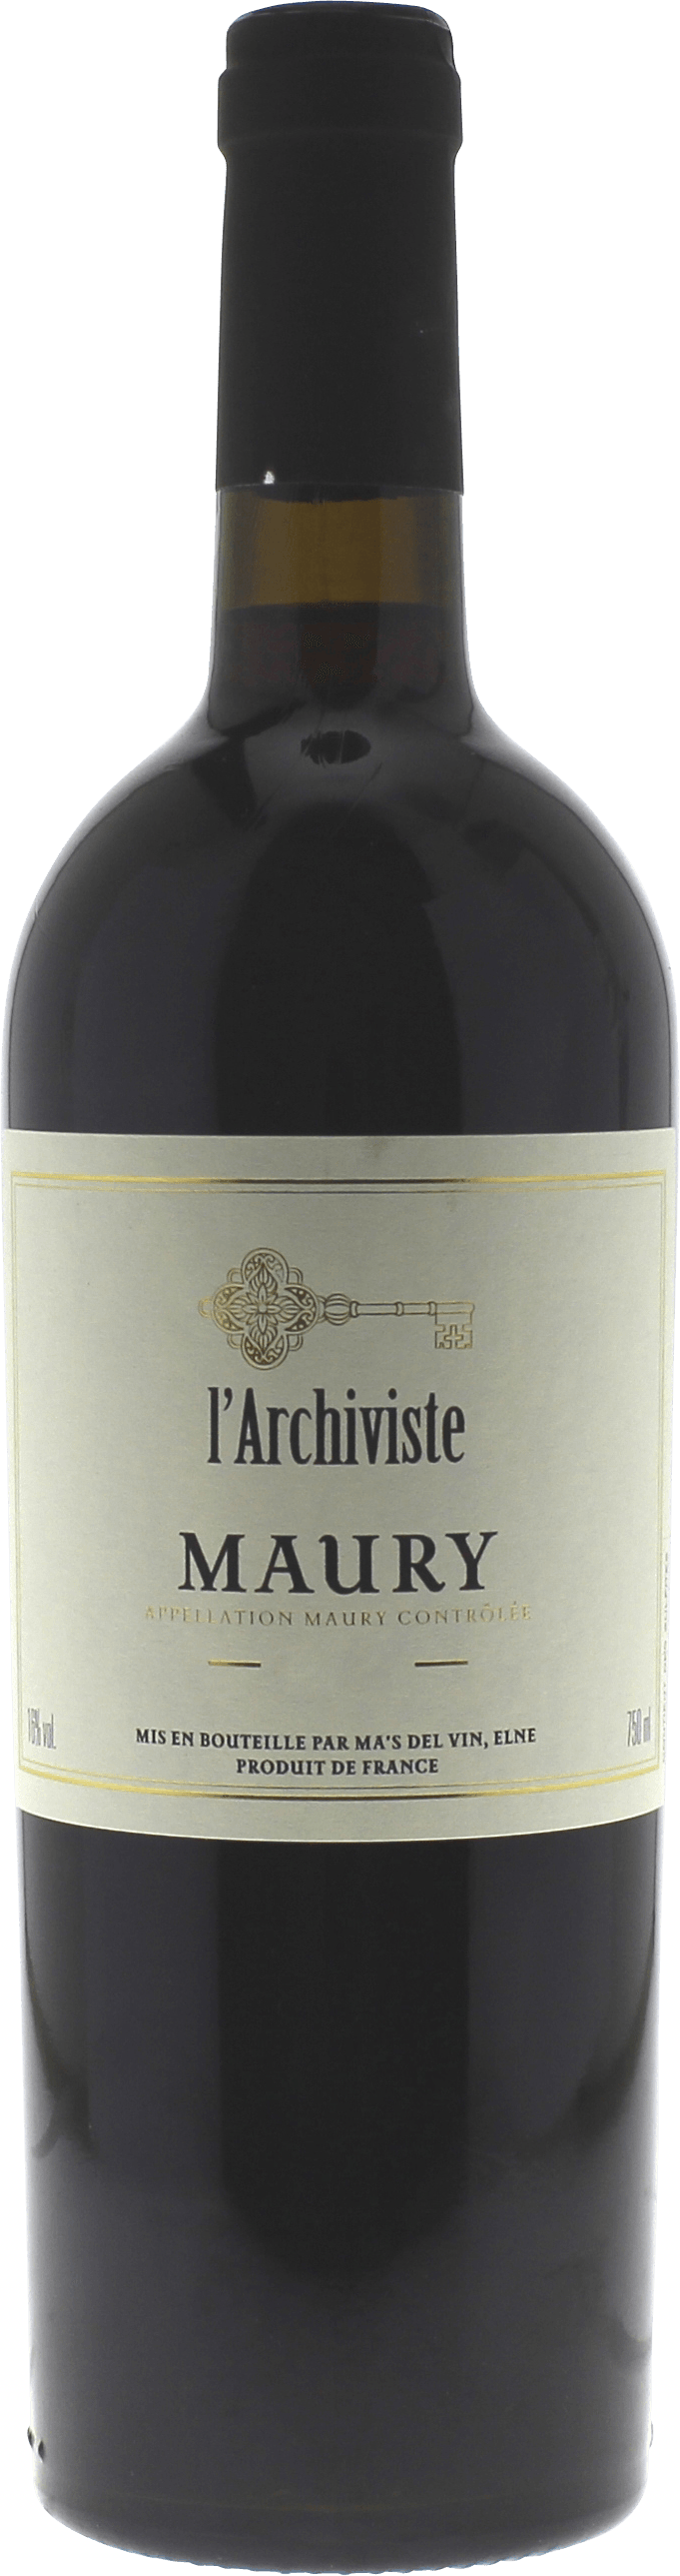 Maury l'archiviste 1992 Vin doux naturel Maury, Vin doux naturel